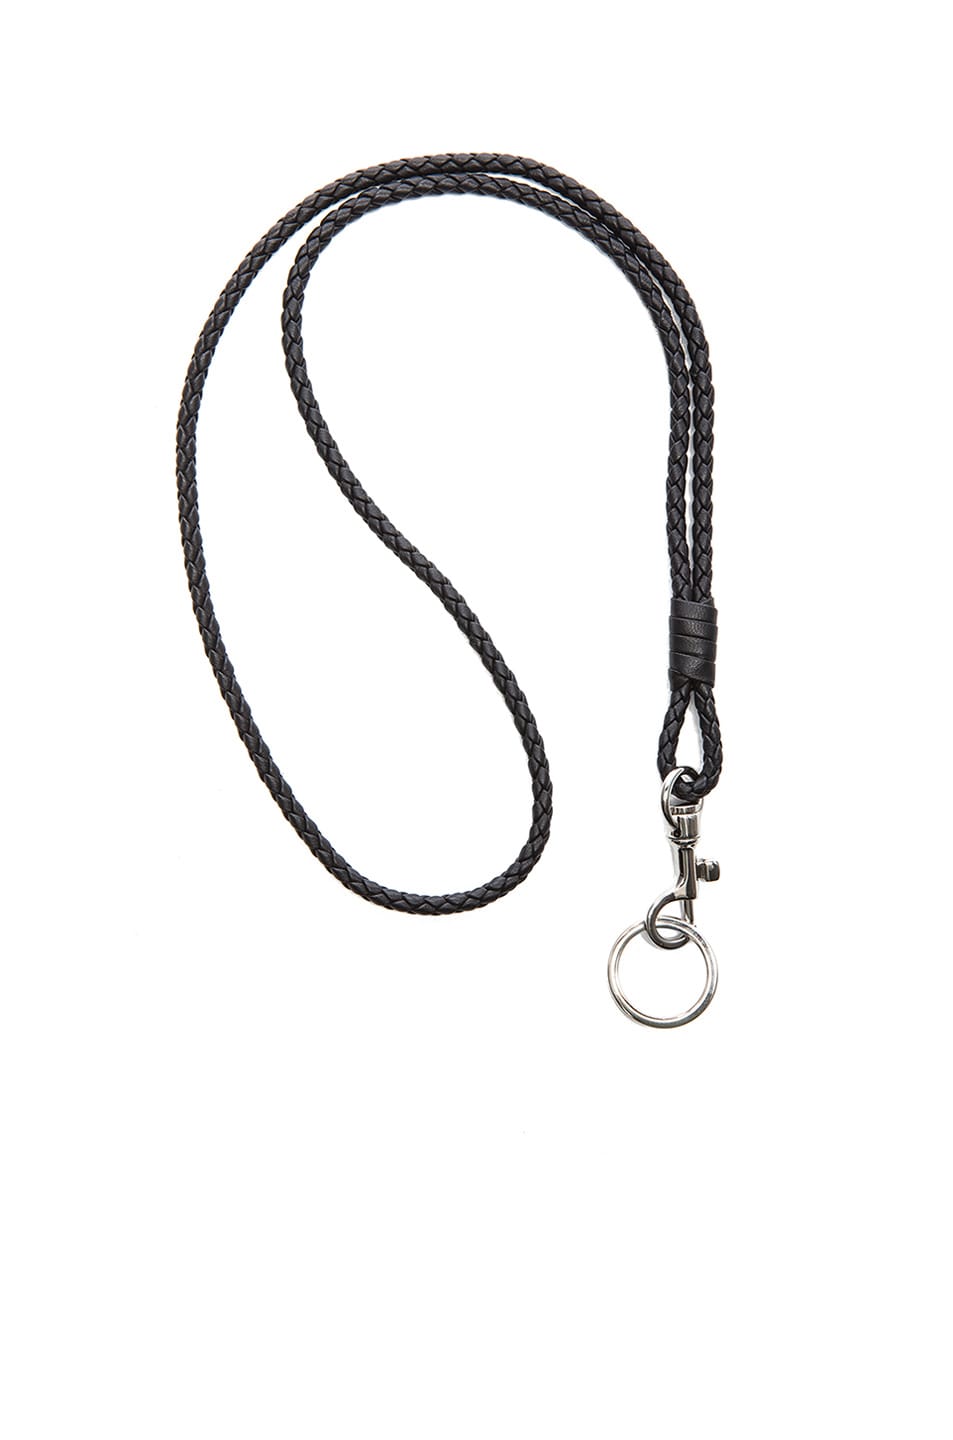 Bottega Veneta Inrecciato Nappa Leather Key Holder in Black | FWRD